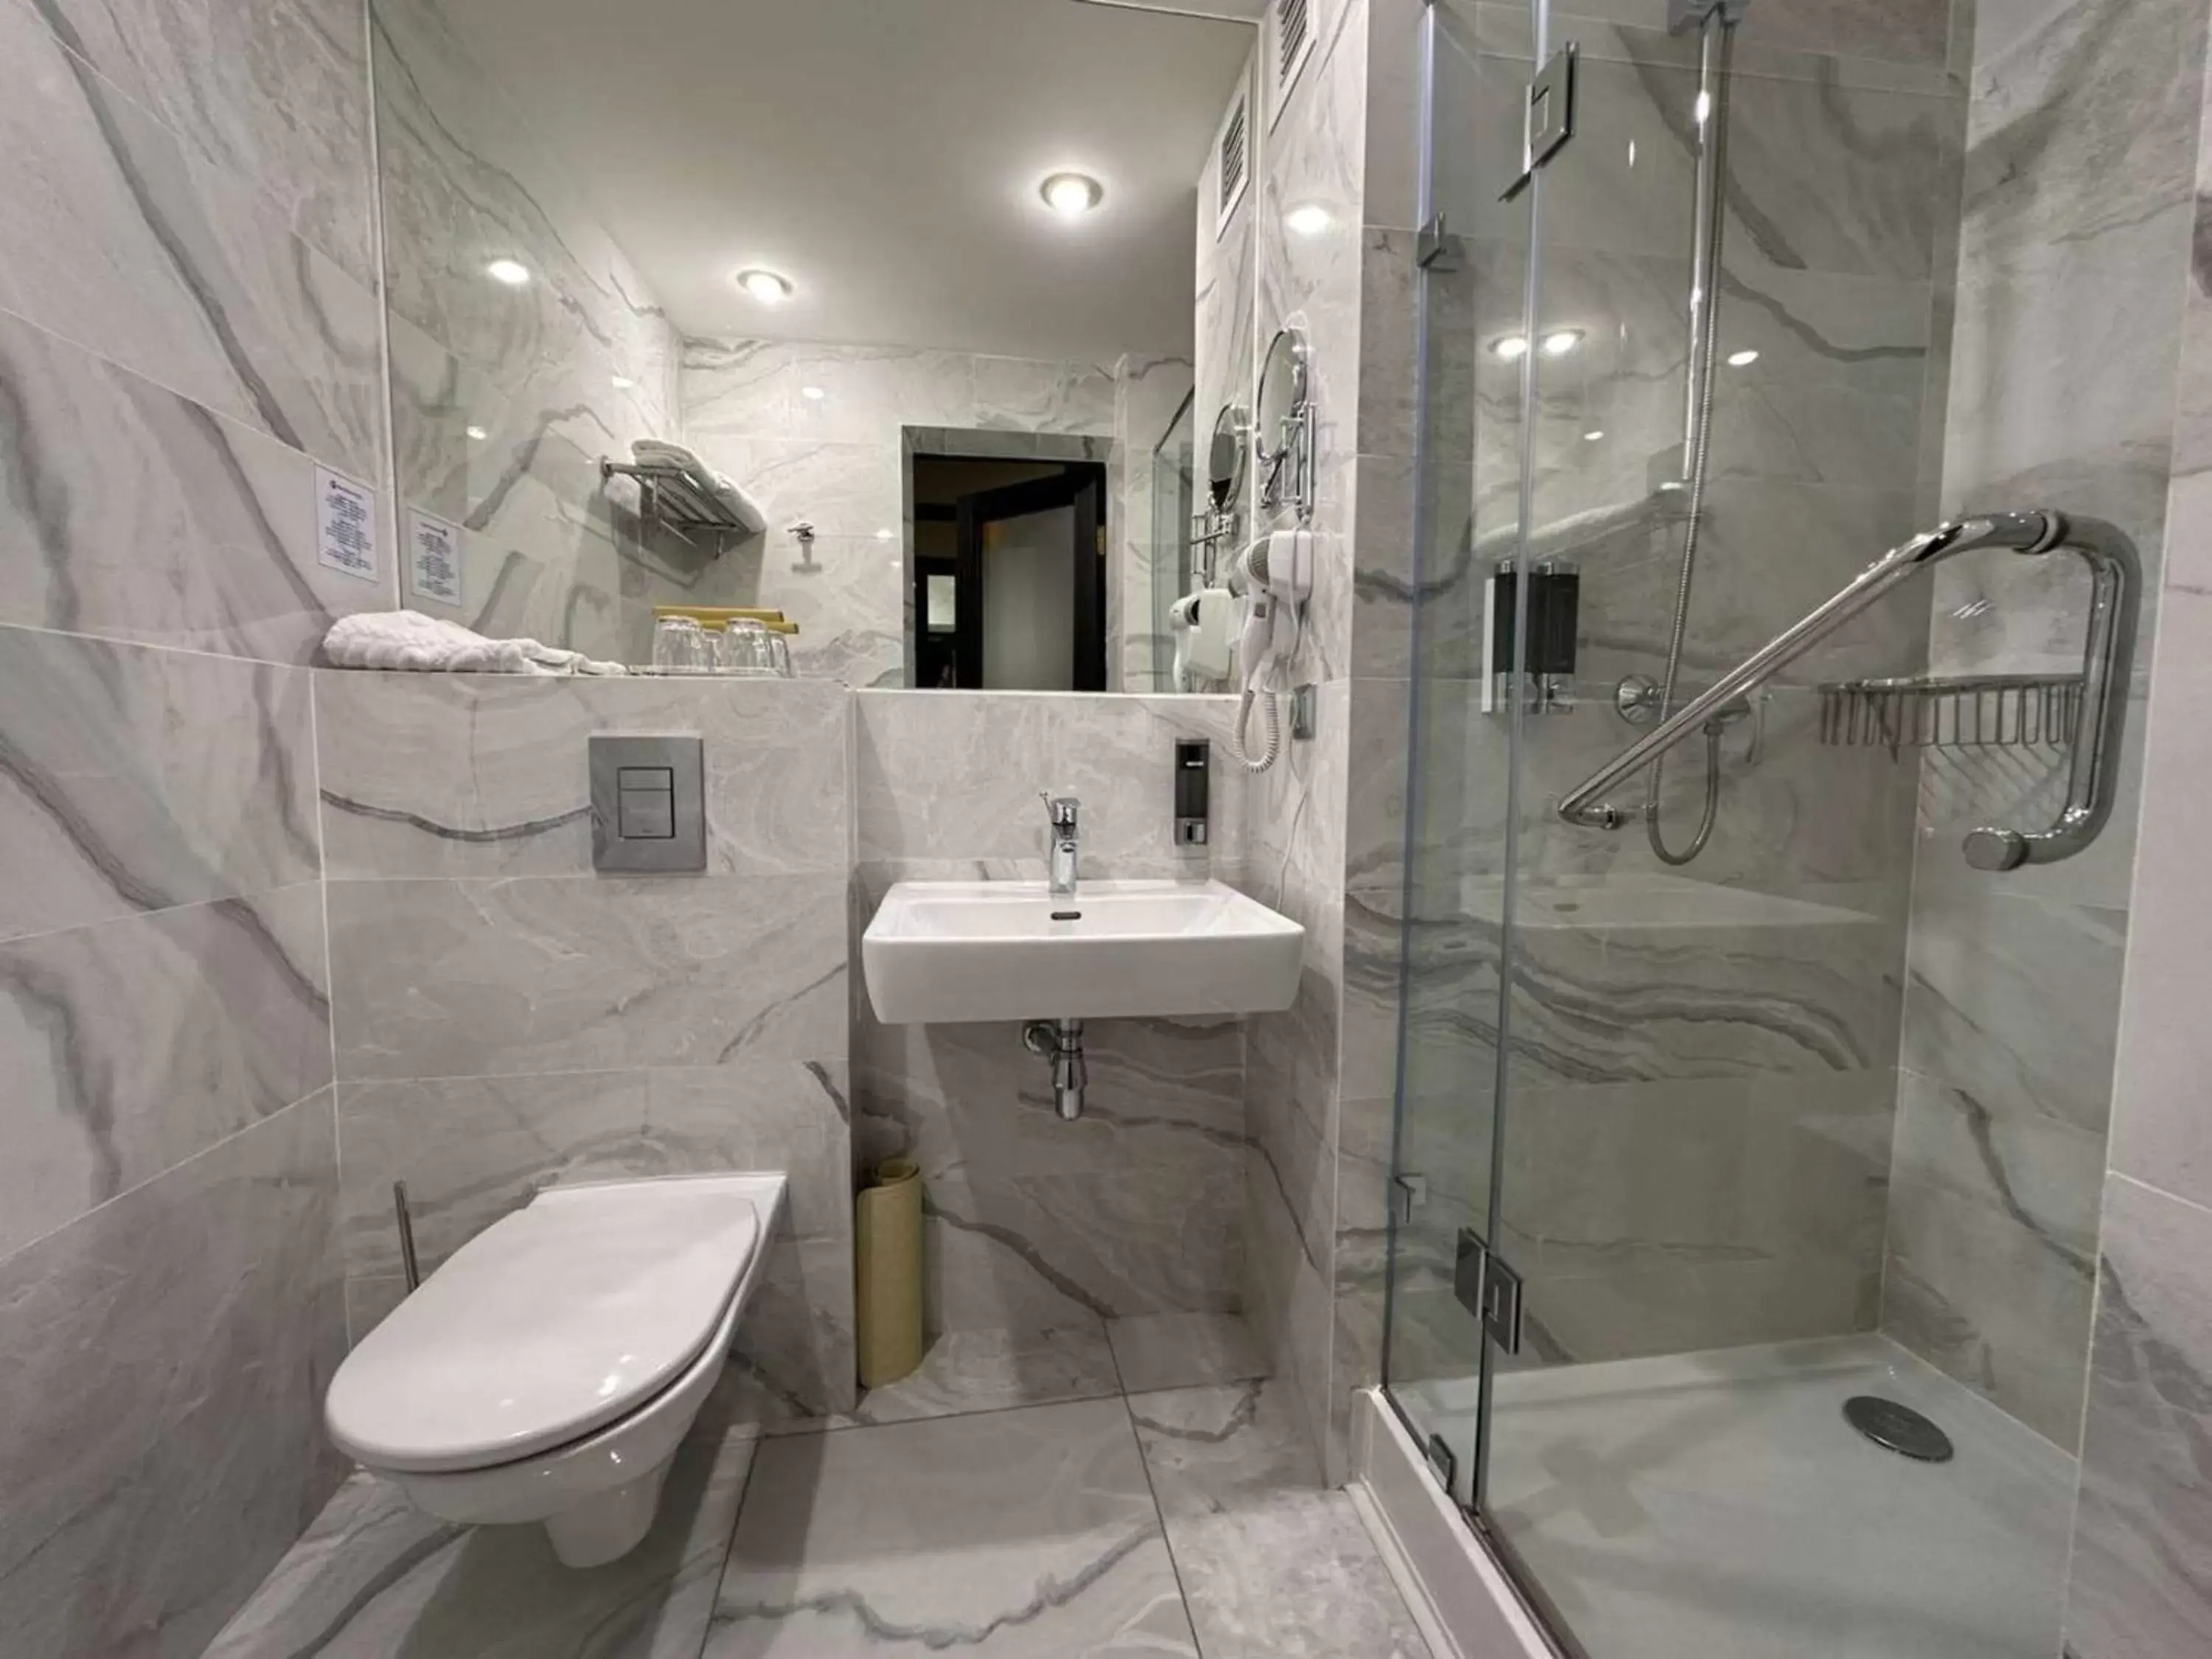 Bedroom, Bathroom in Best Western Plus Astana Hotel